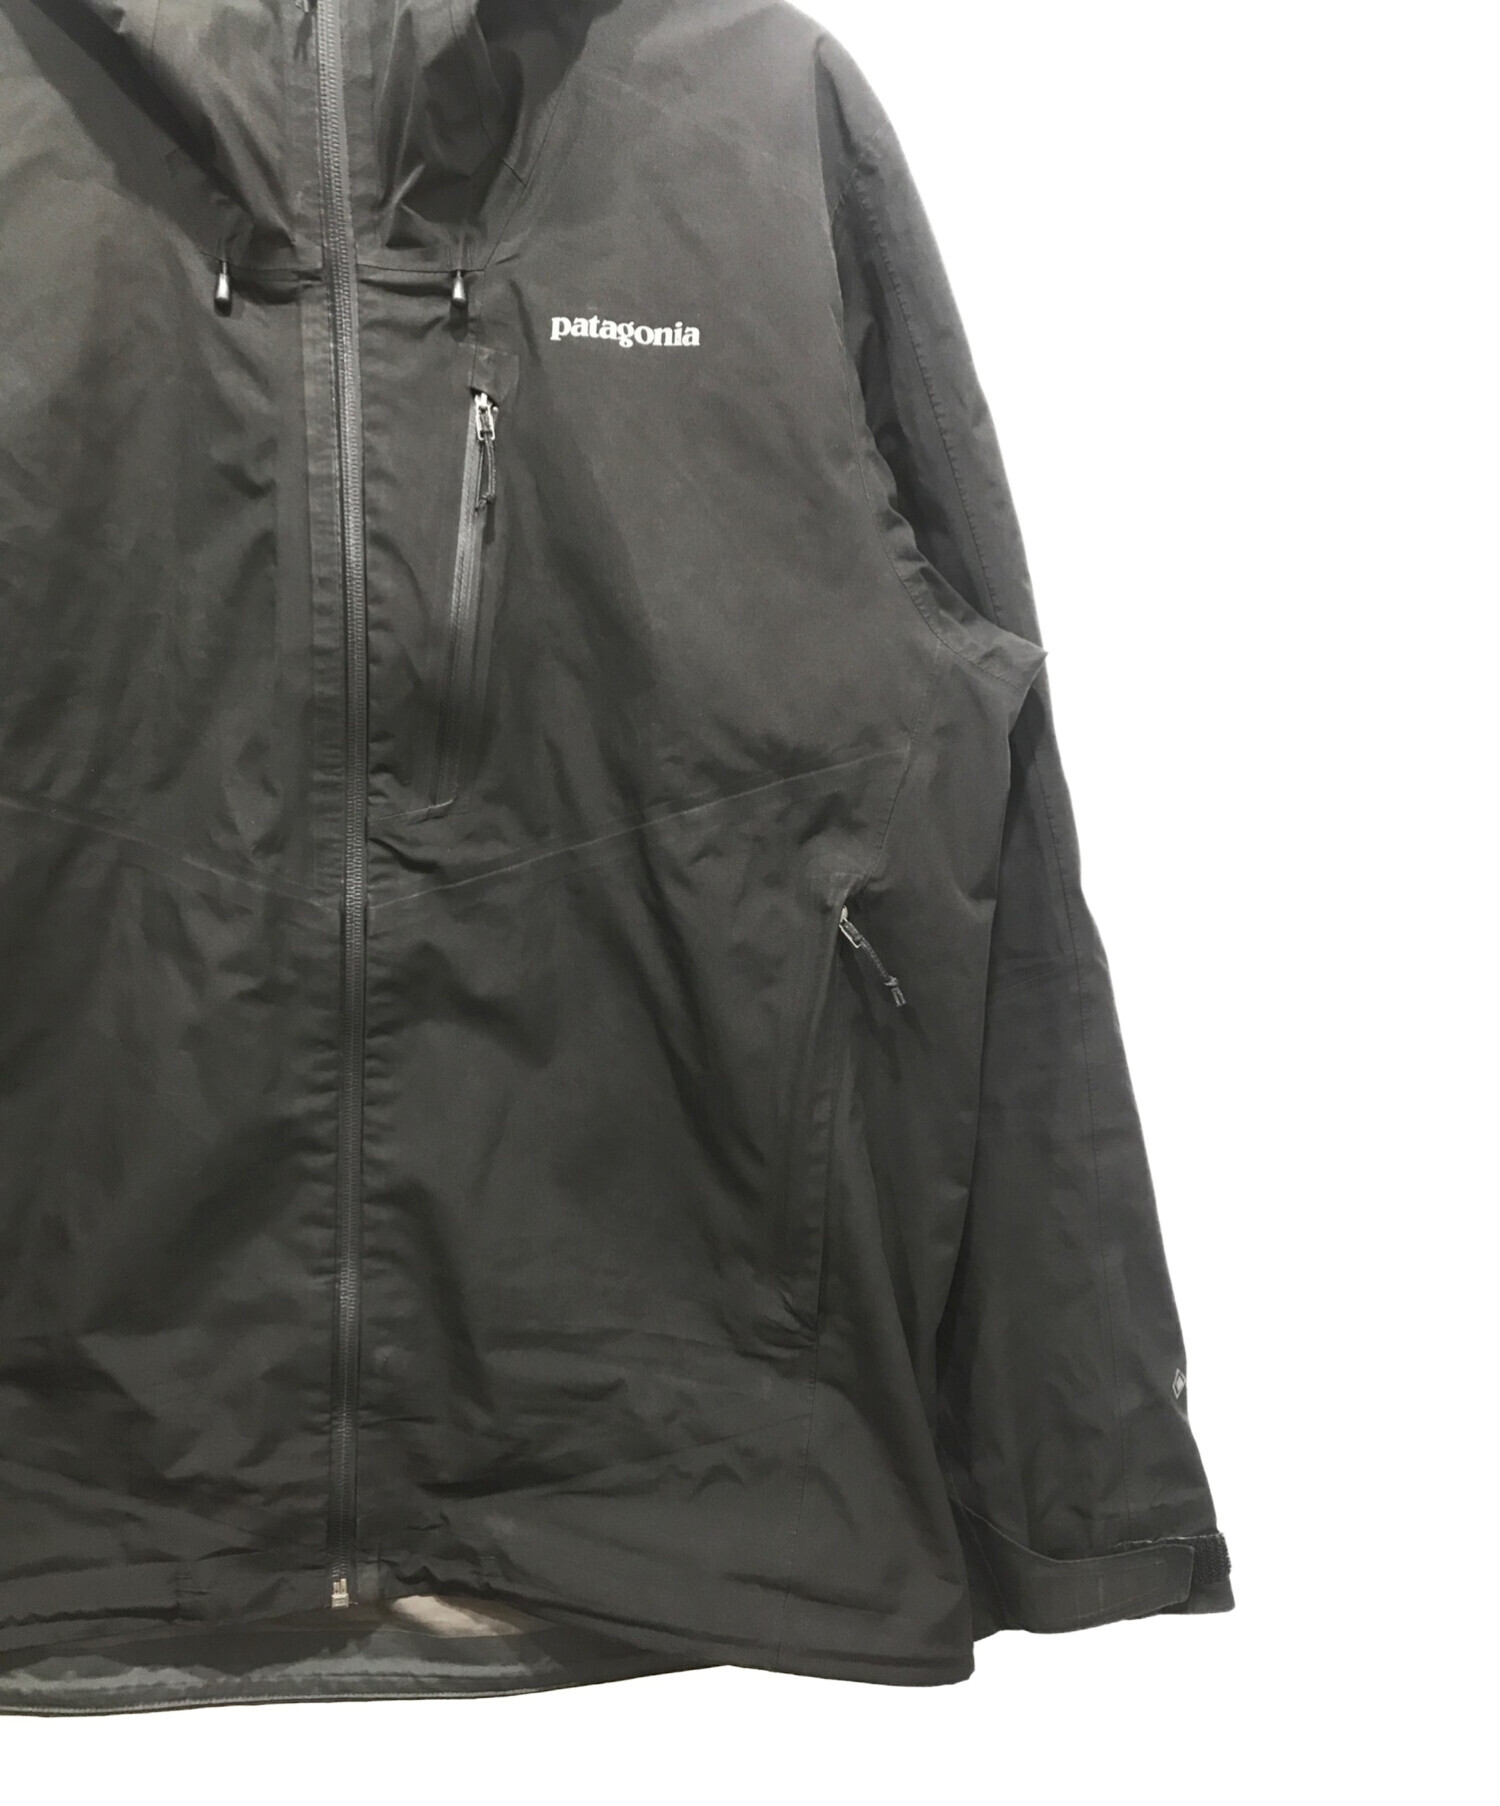 Patagonia (パタゴニア) カルサイトジャケット ブラック サイズ:L